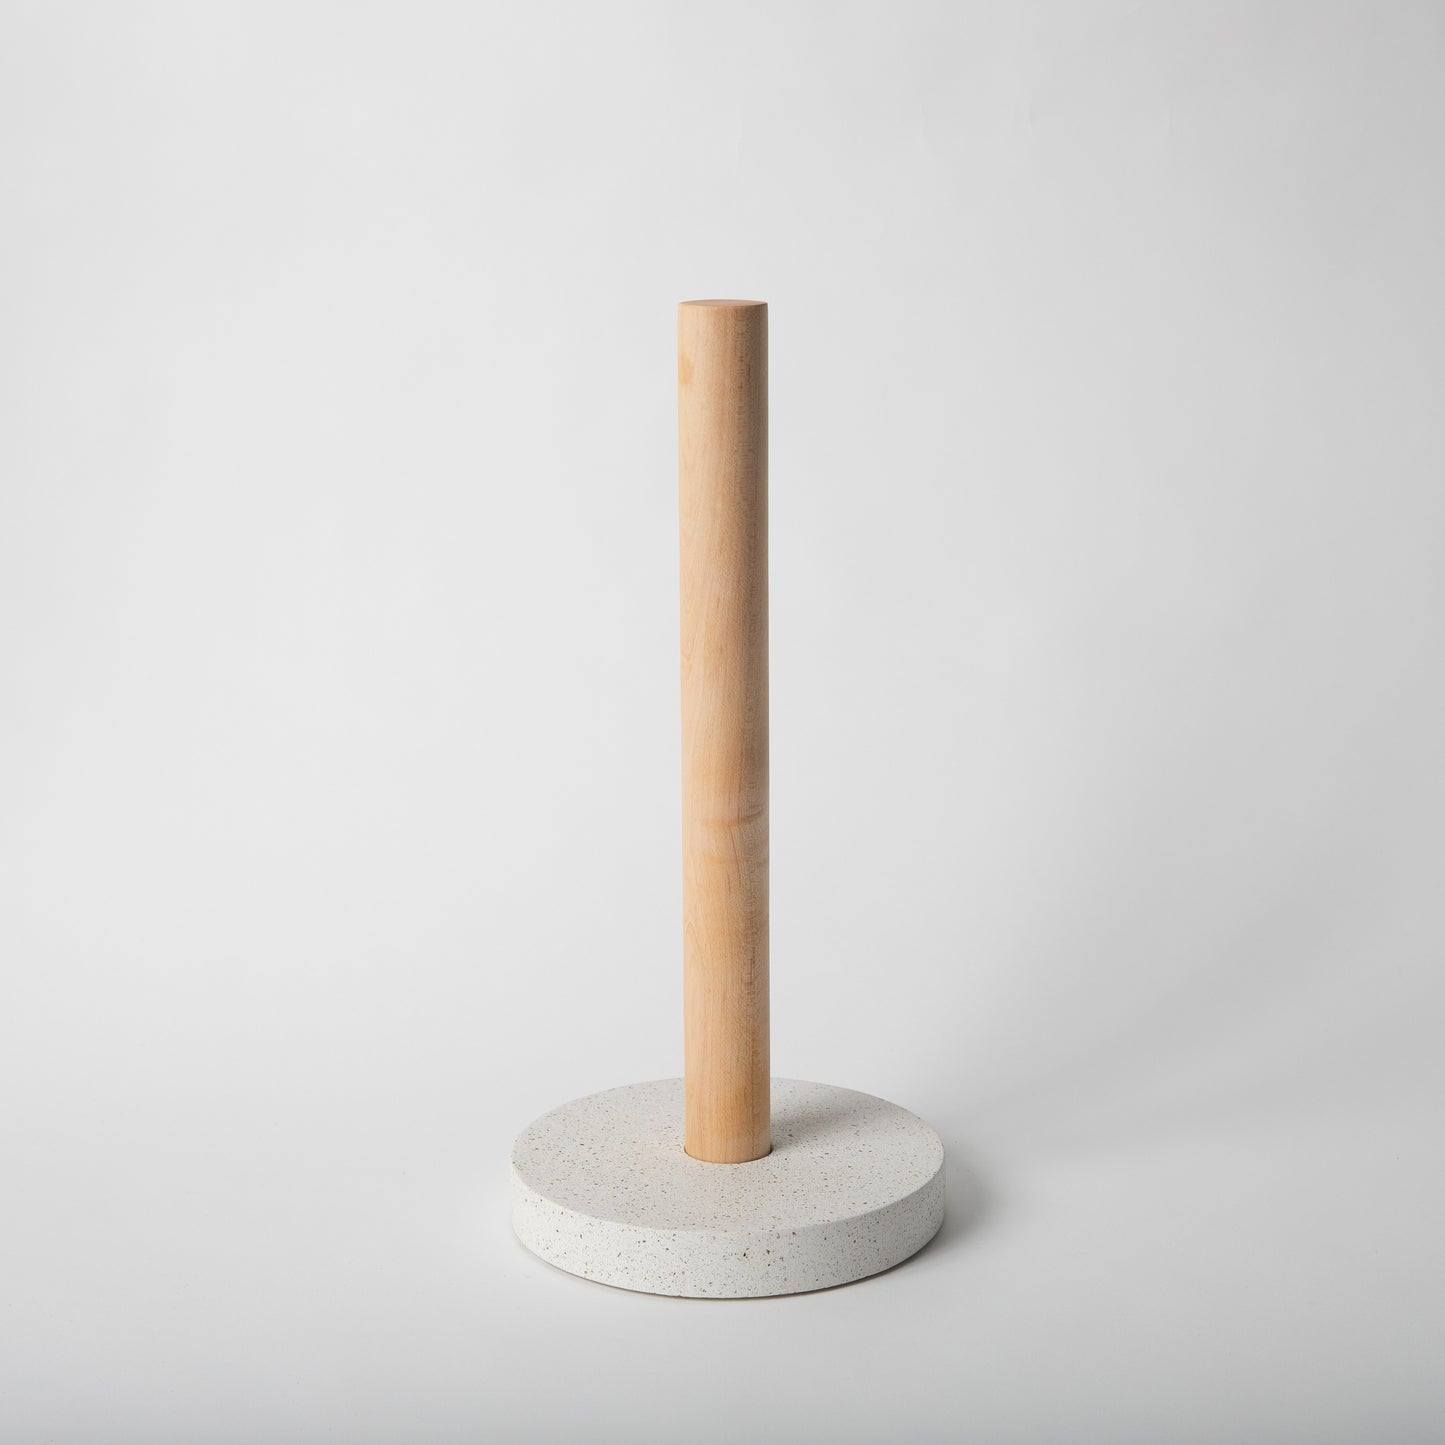 Concrete terrazzo paper towel holder in white terrazzo with maple rod.